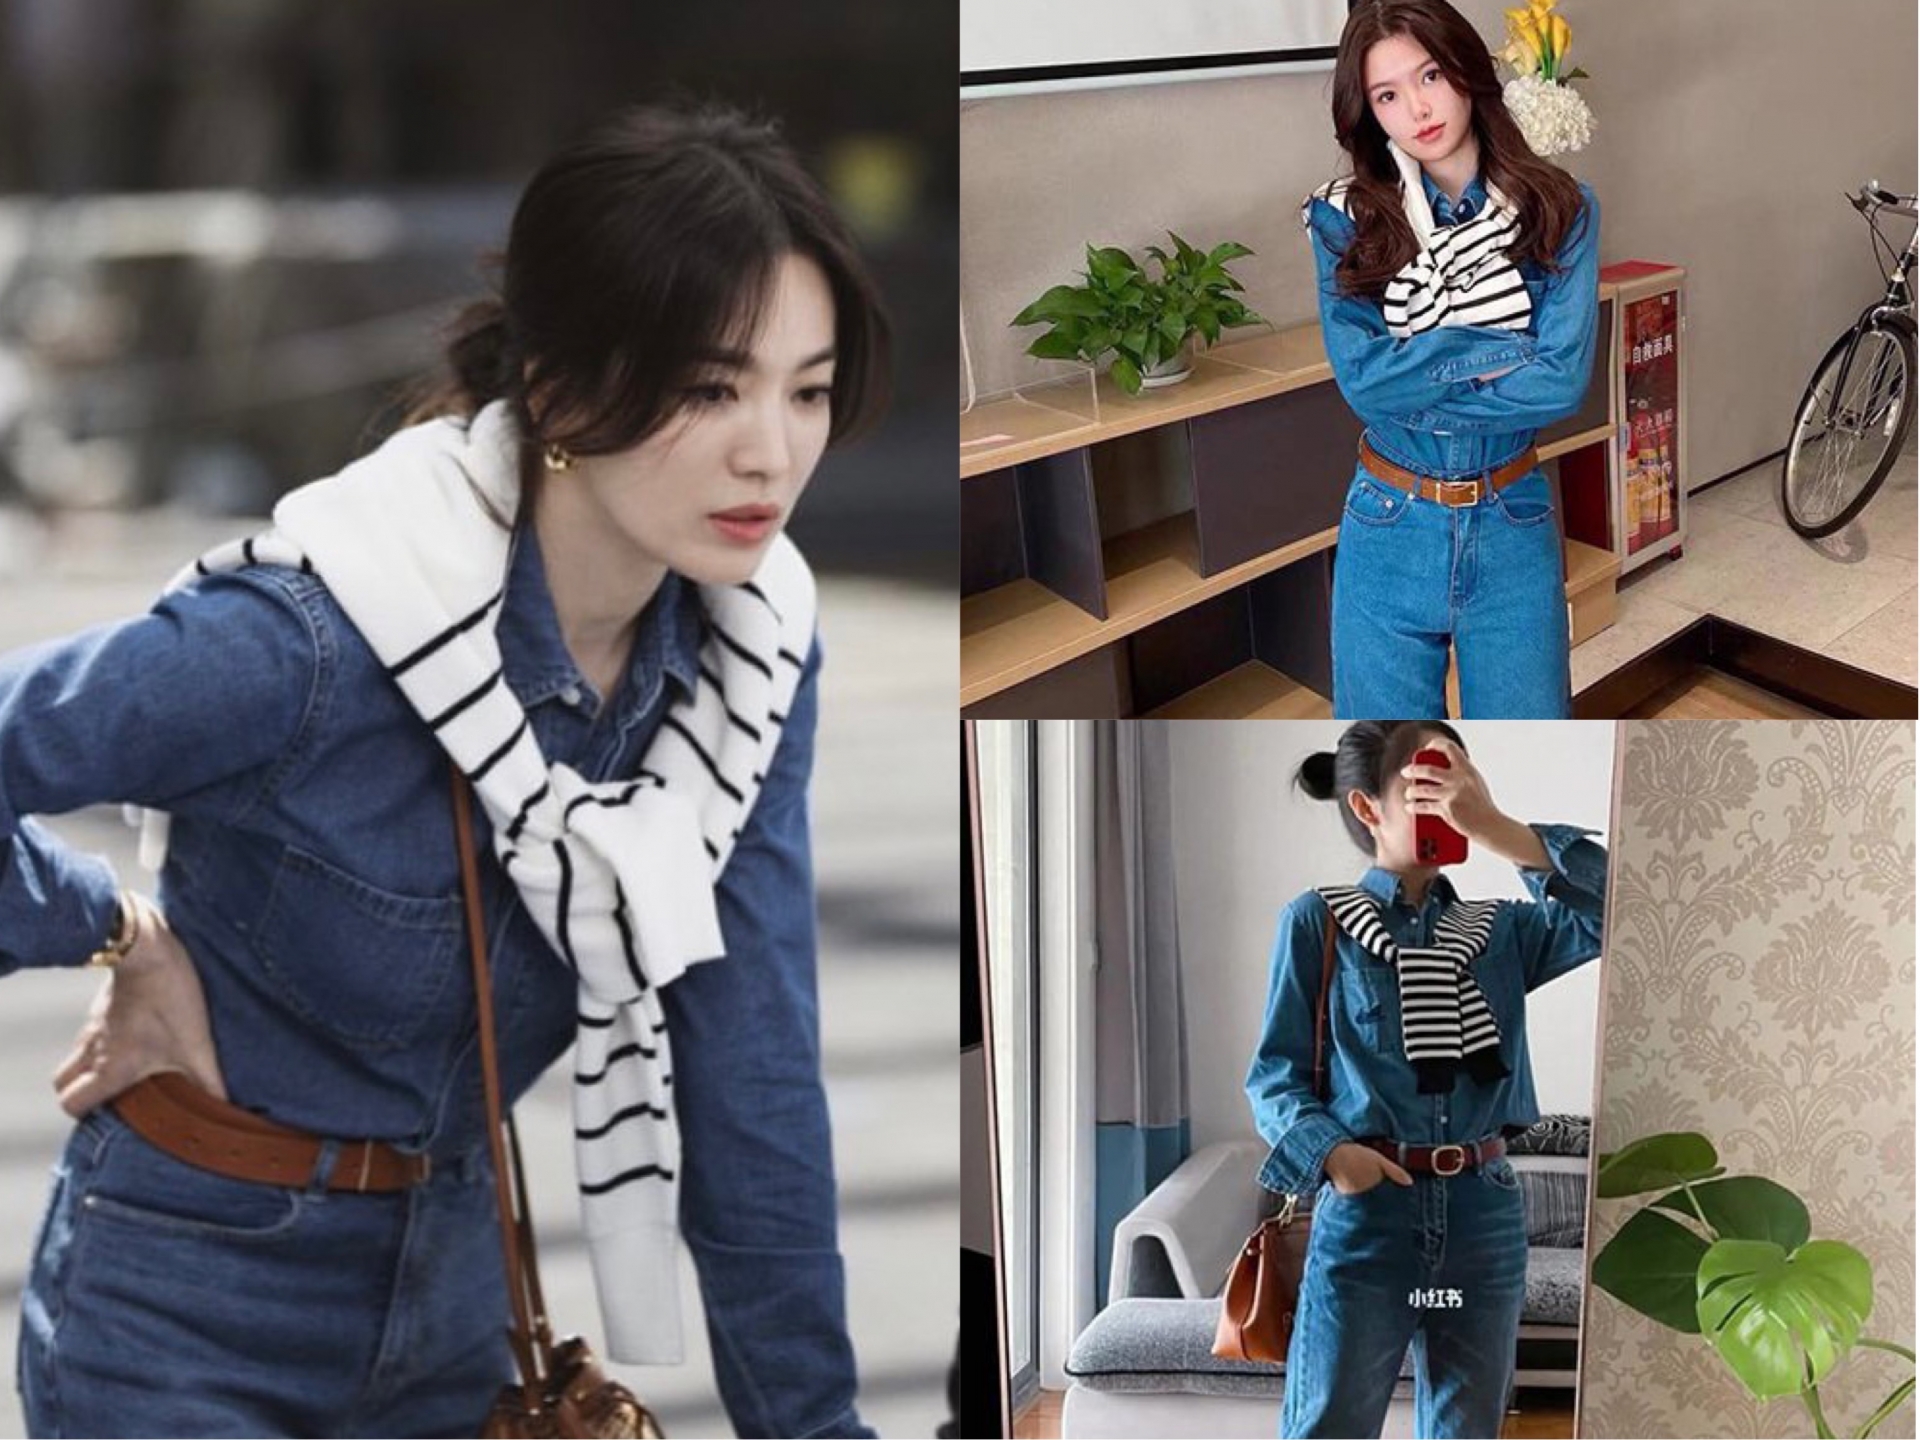 Thời trang của Song Hye Kyo trong phim mới khiến chị em 'phát sốt'. Những outfit trẻ trung của người đẹp còn trở thành trào lưu được nhiều cô nàng copy y hệt.